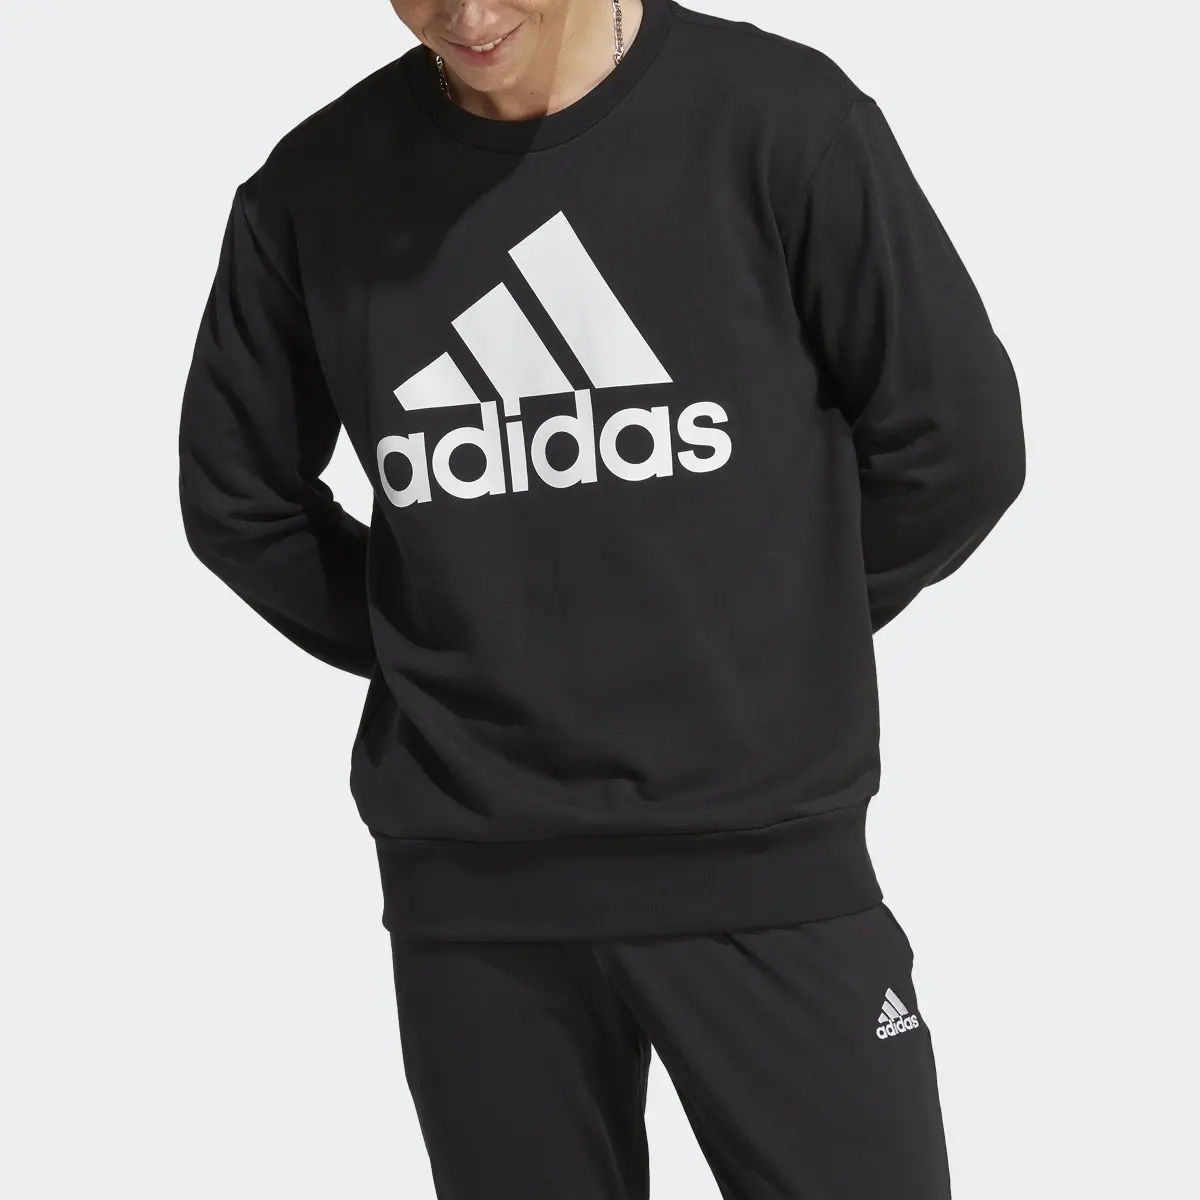 Adidas Essentials French Terry Big Logo Sweatshirt. 1